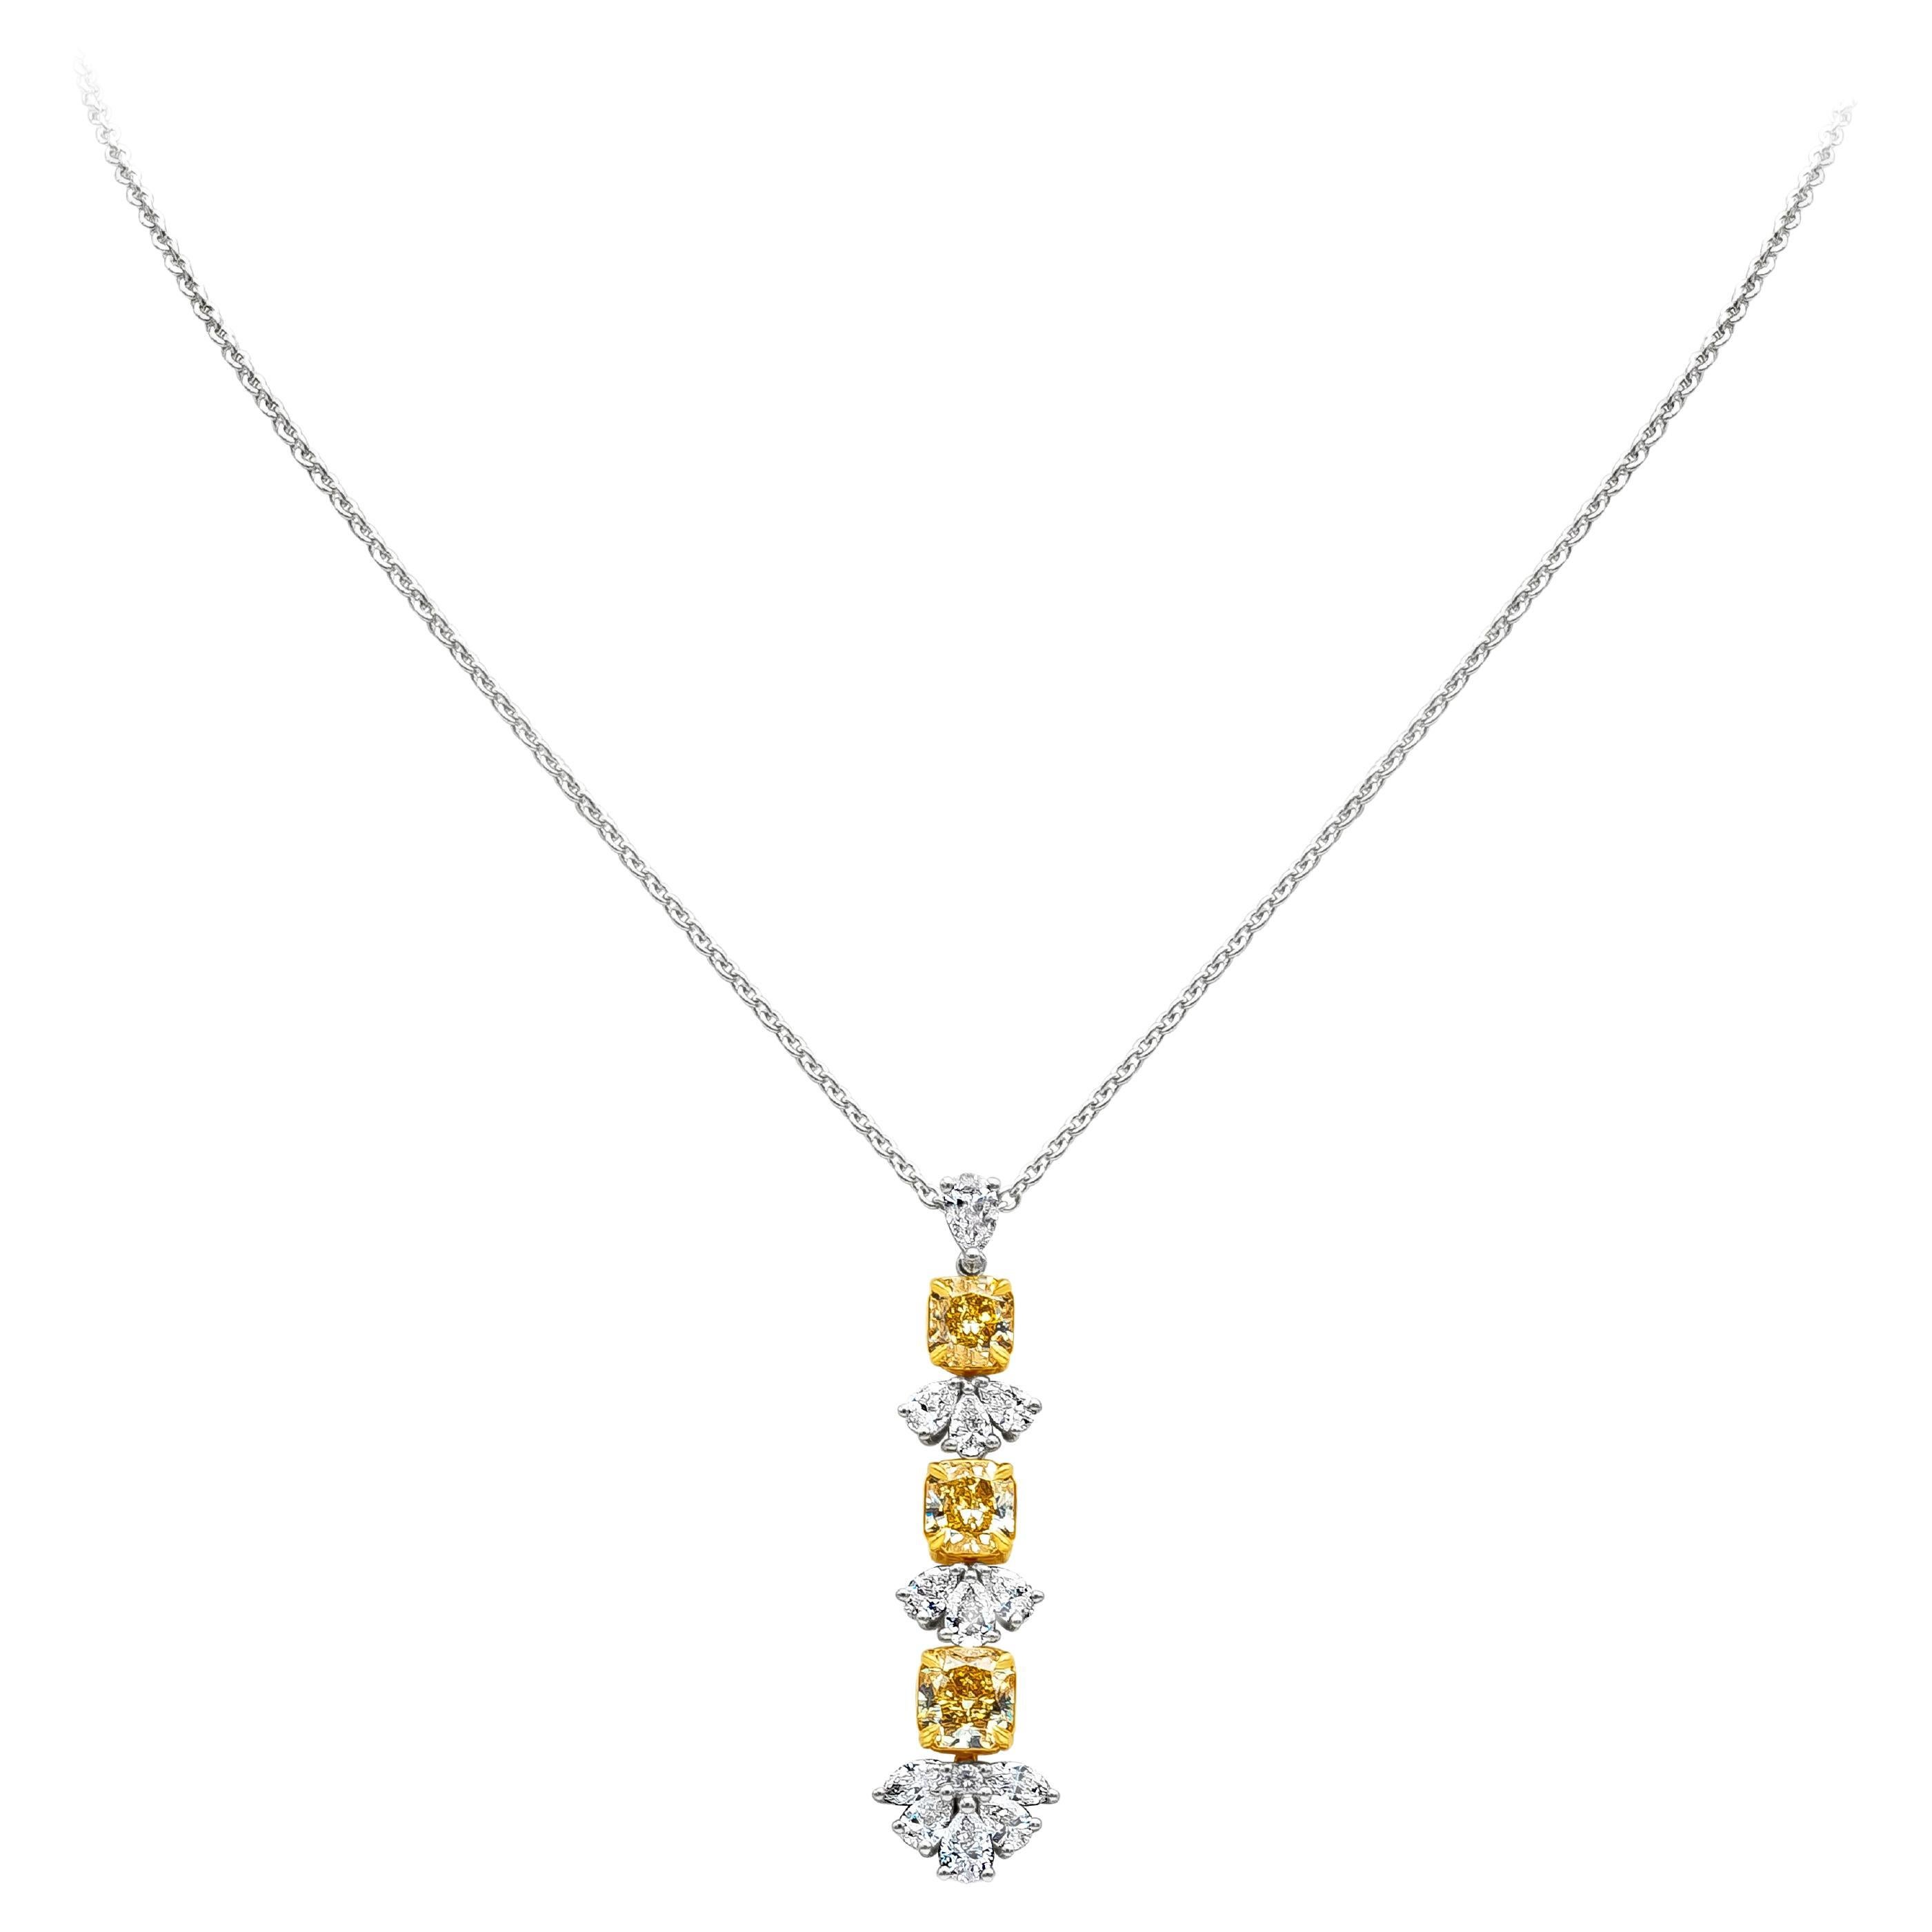 Roman Malakov, collier pendentif jaune fantaisie taille radiant de 3,13 carats au total